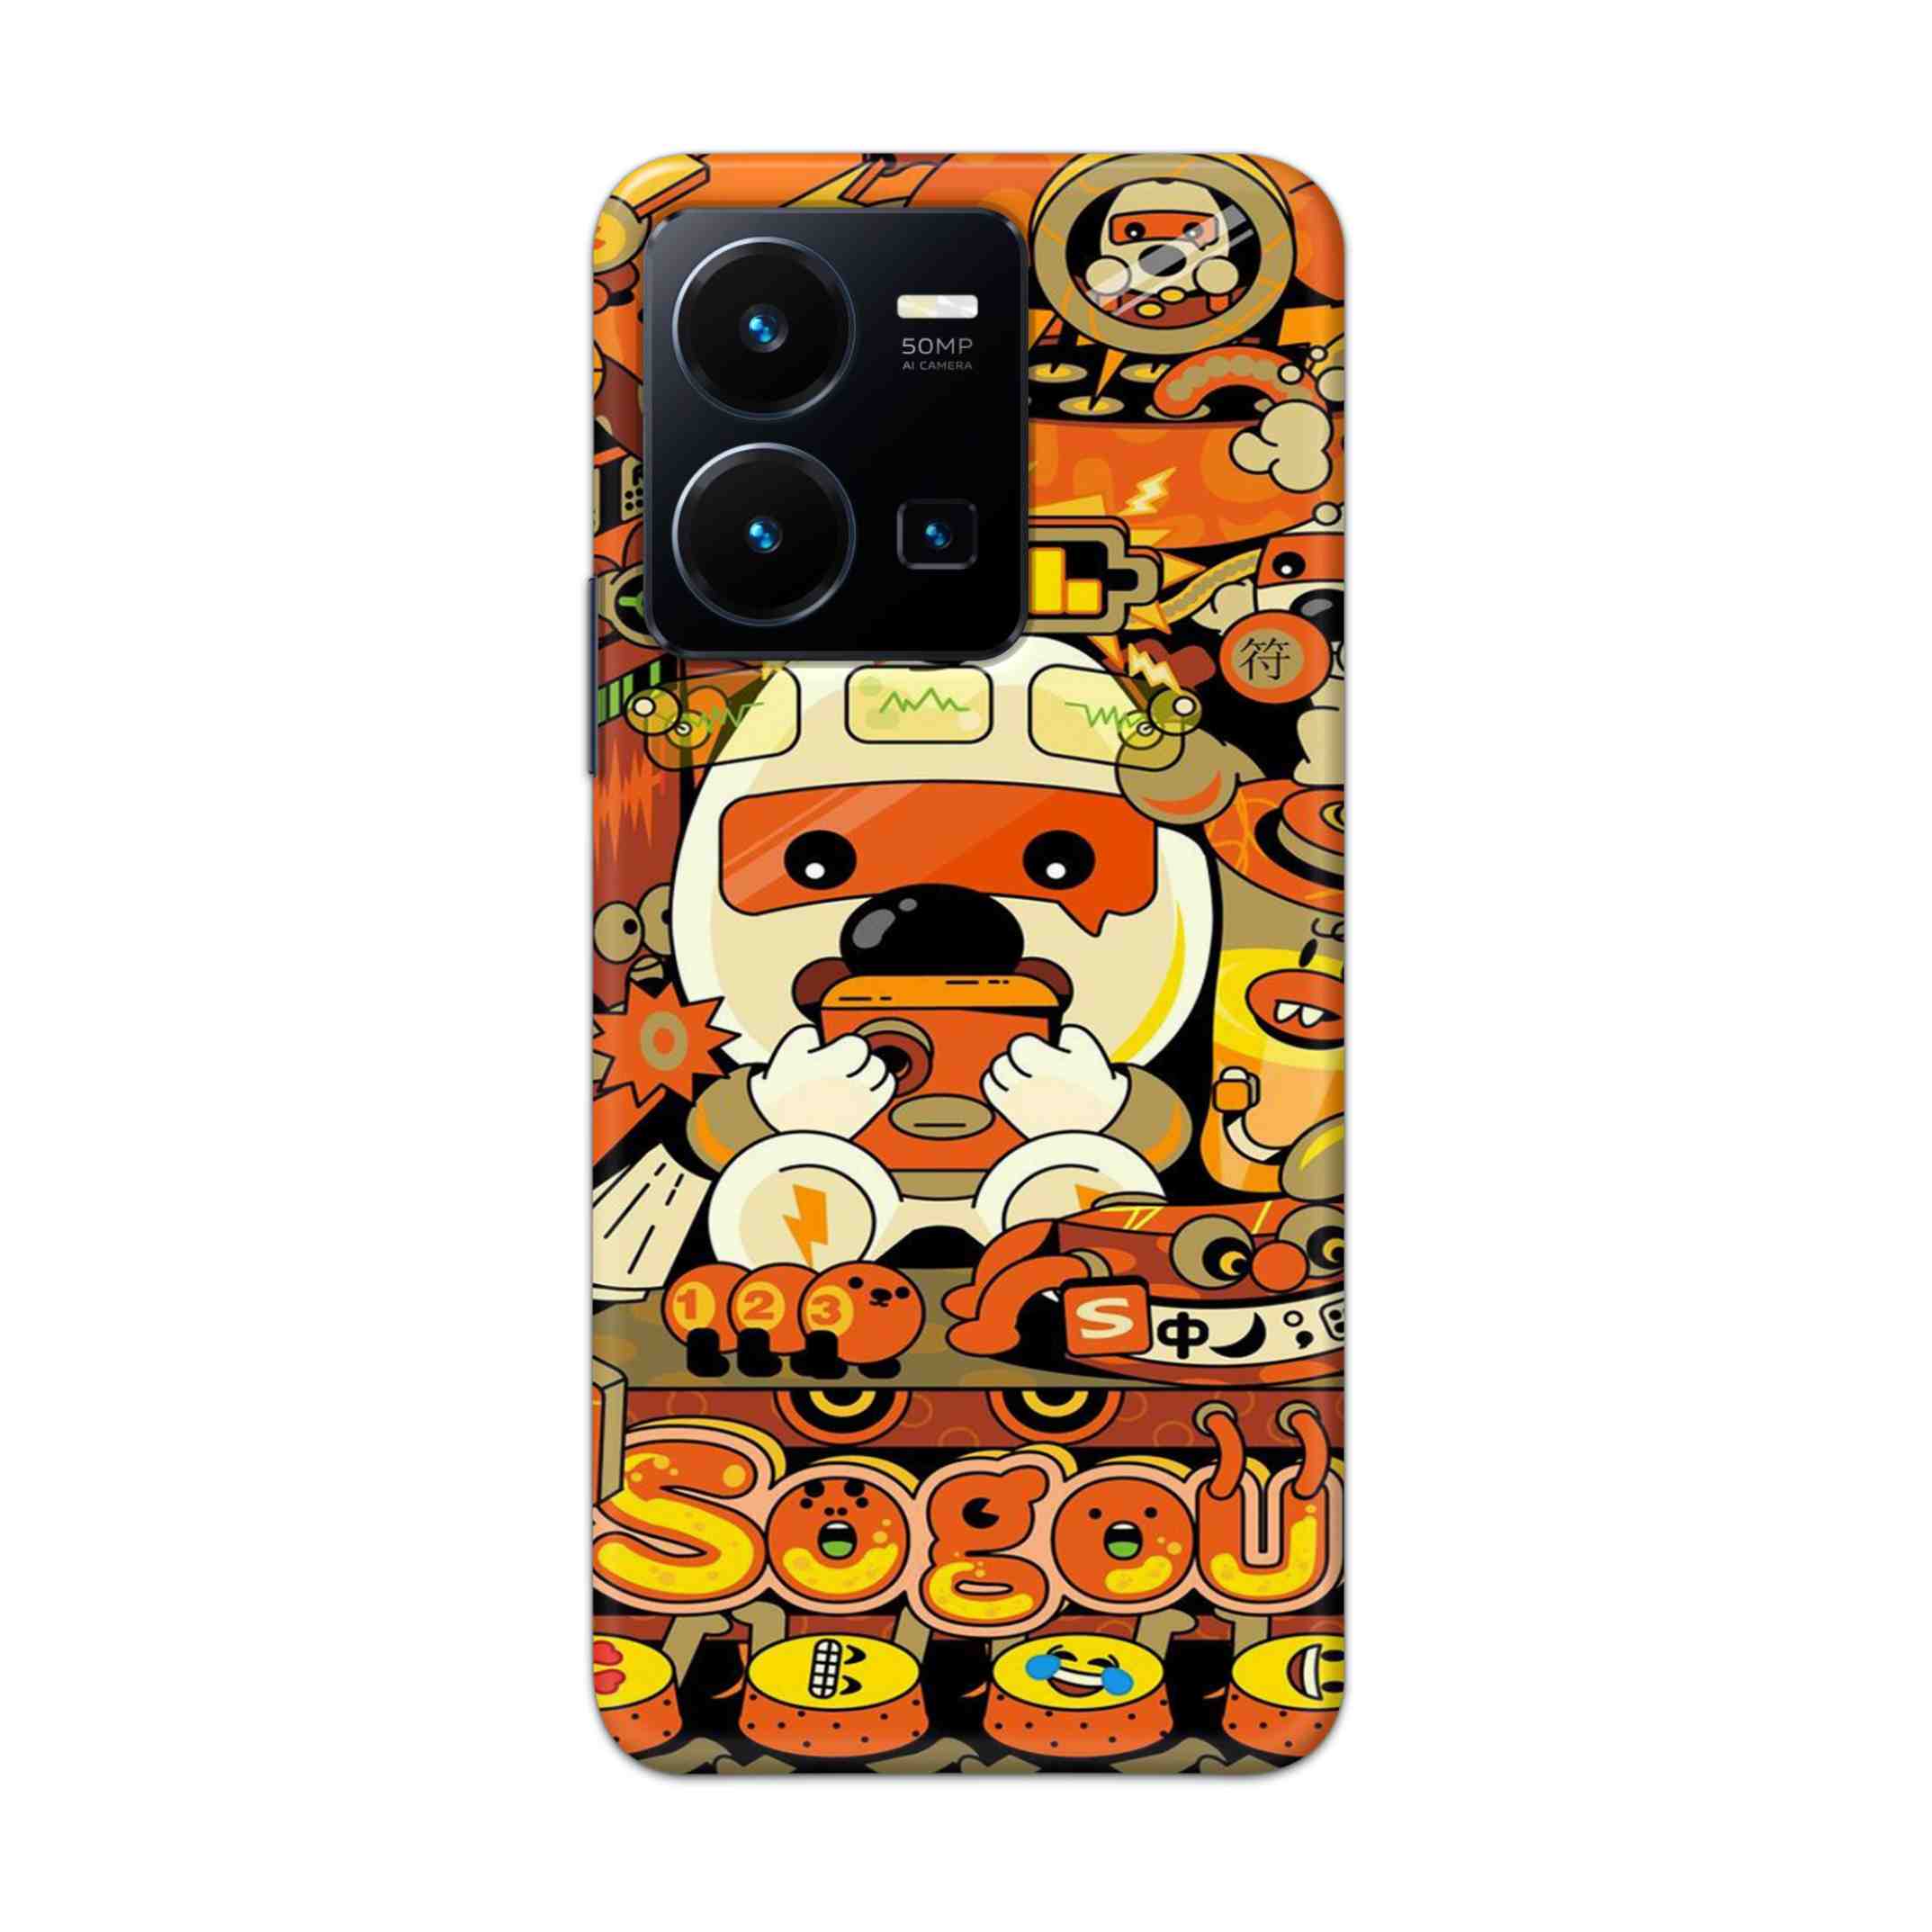 Buy Sogou Hard Back Mobile Phone Case Cover For Vivo Y35 2022 Online